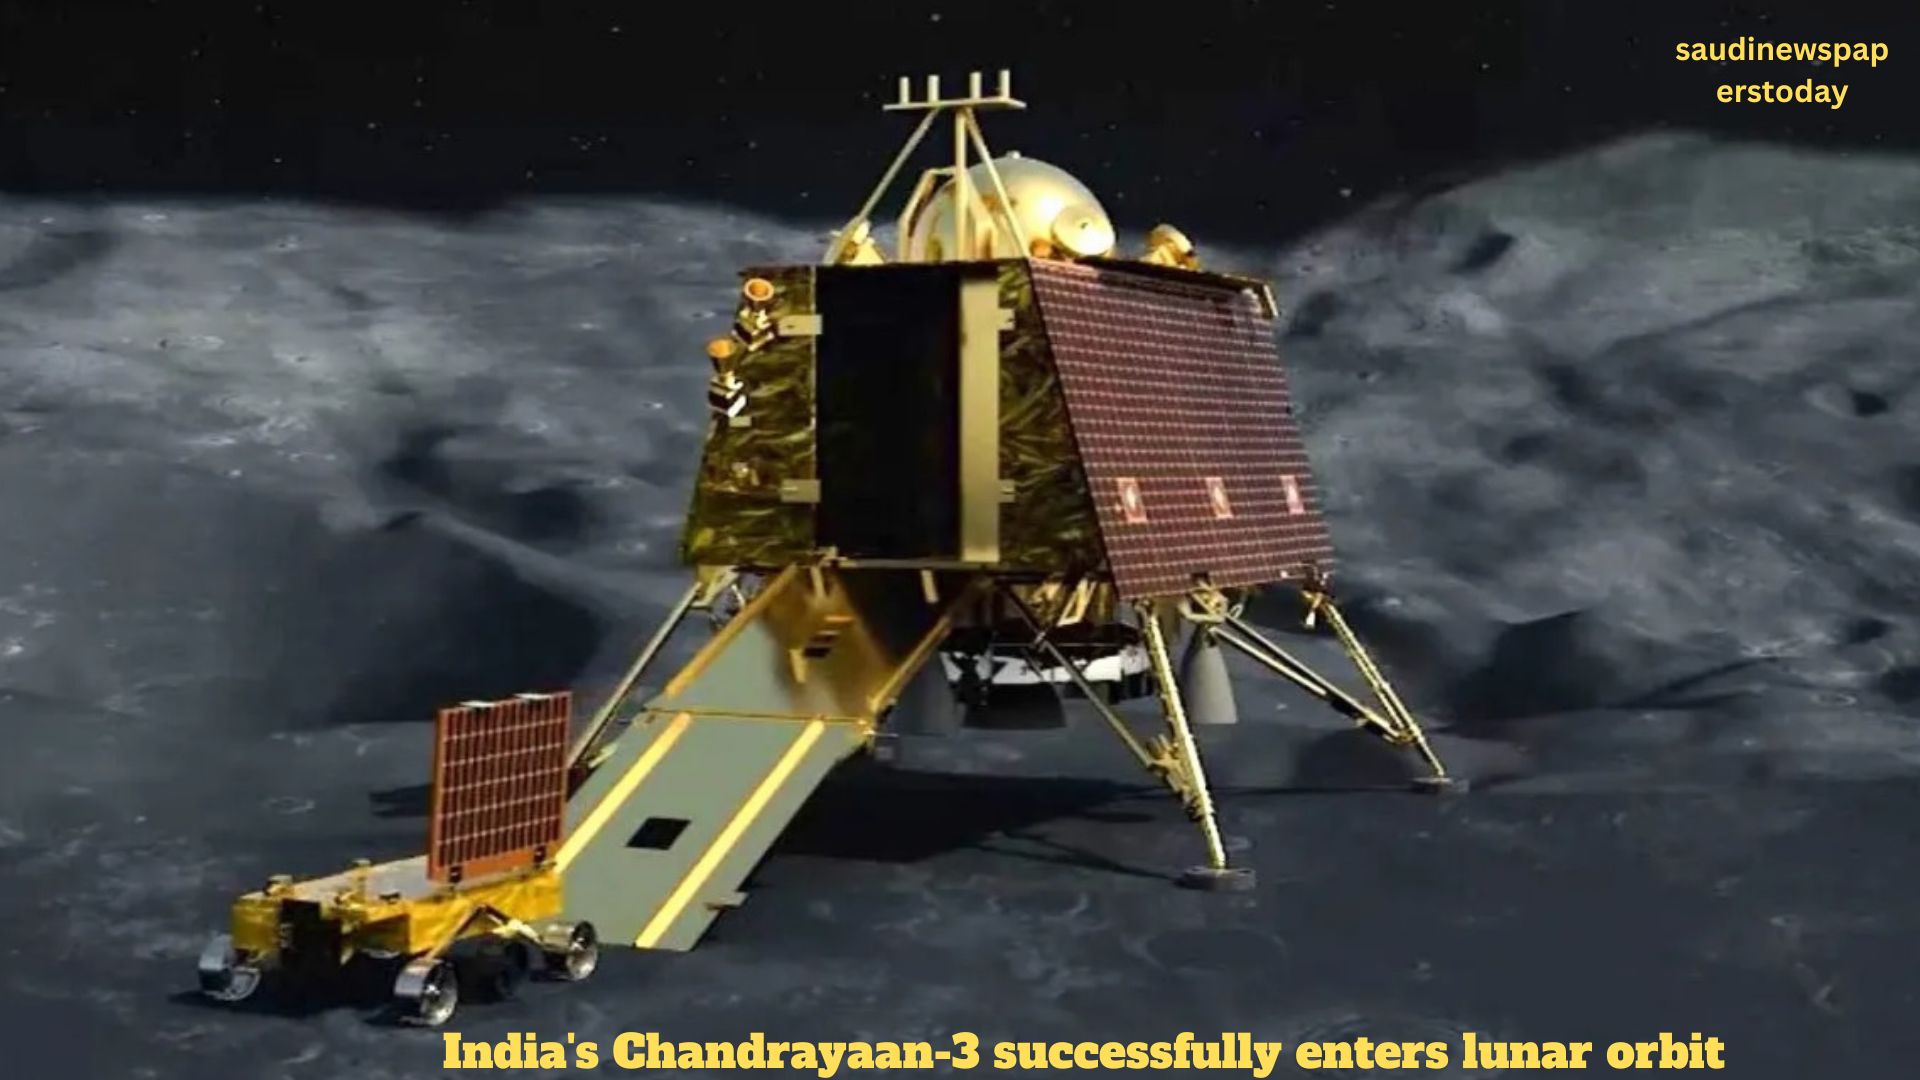 India's Chandrayaan-3